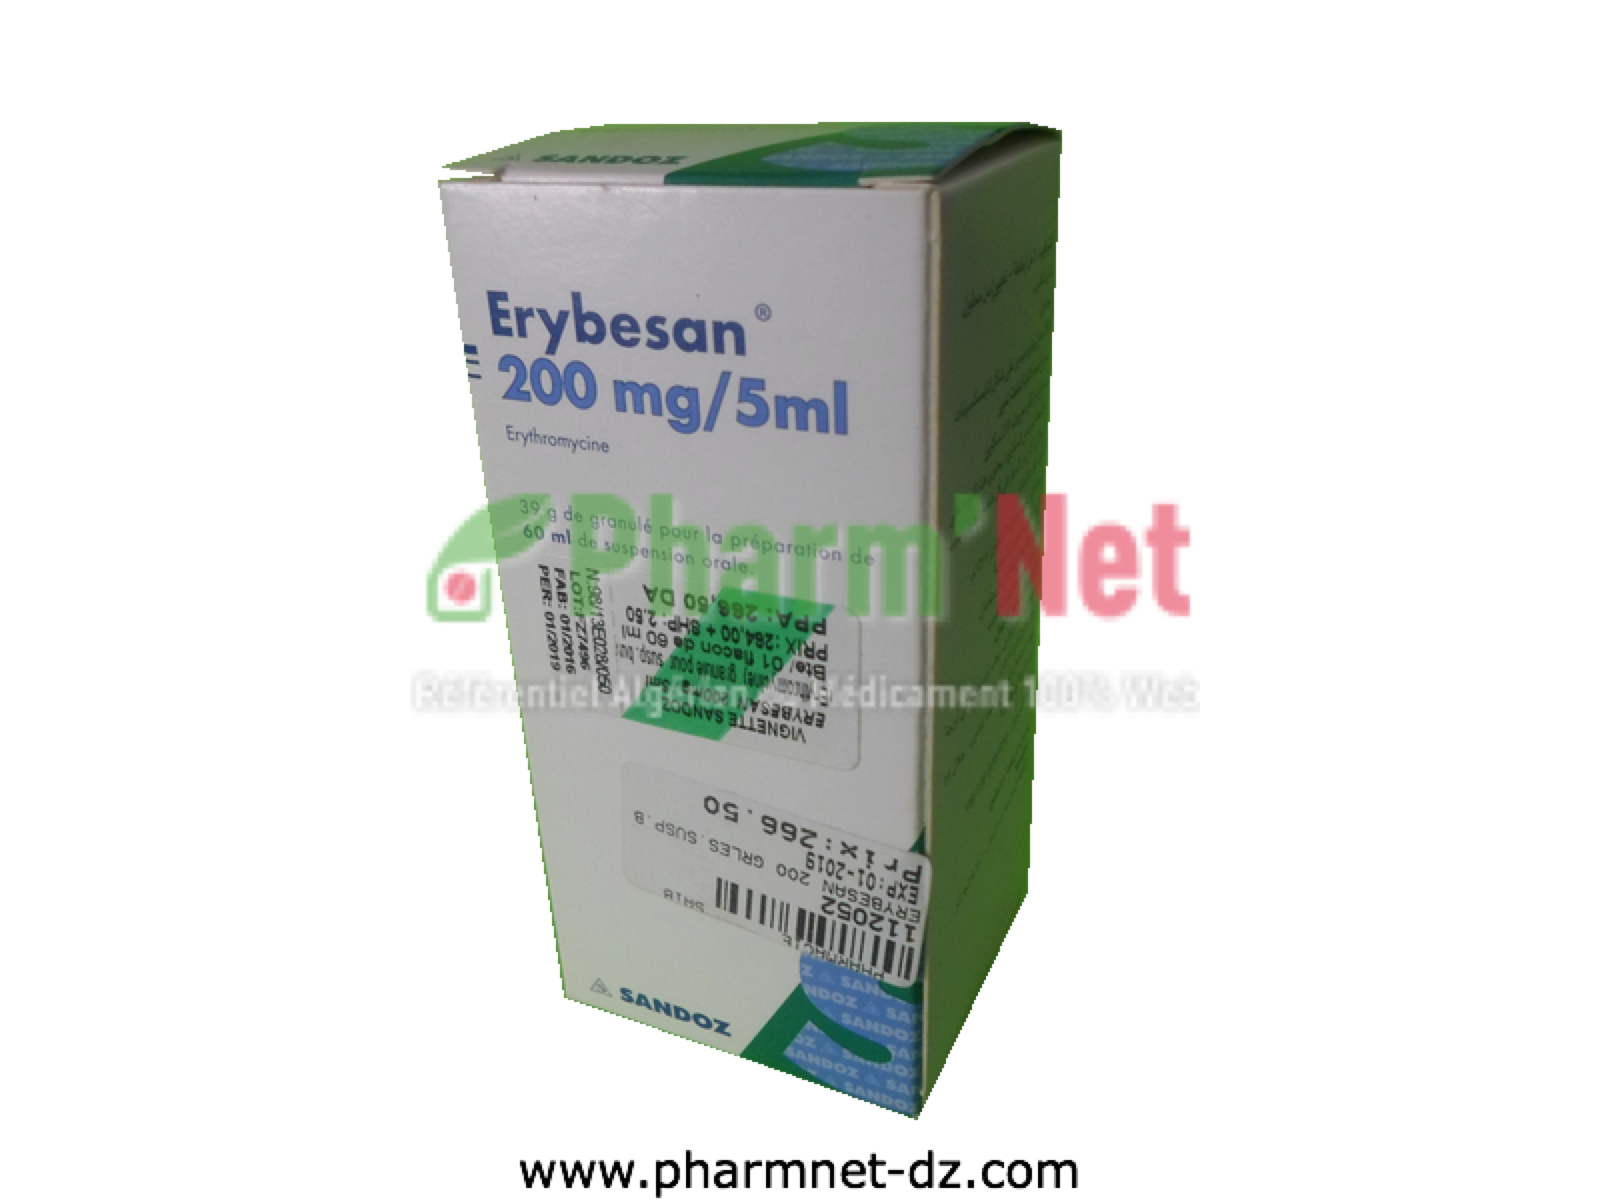 erythromycin ethylsuccinate 200mg/5ml